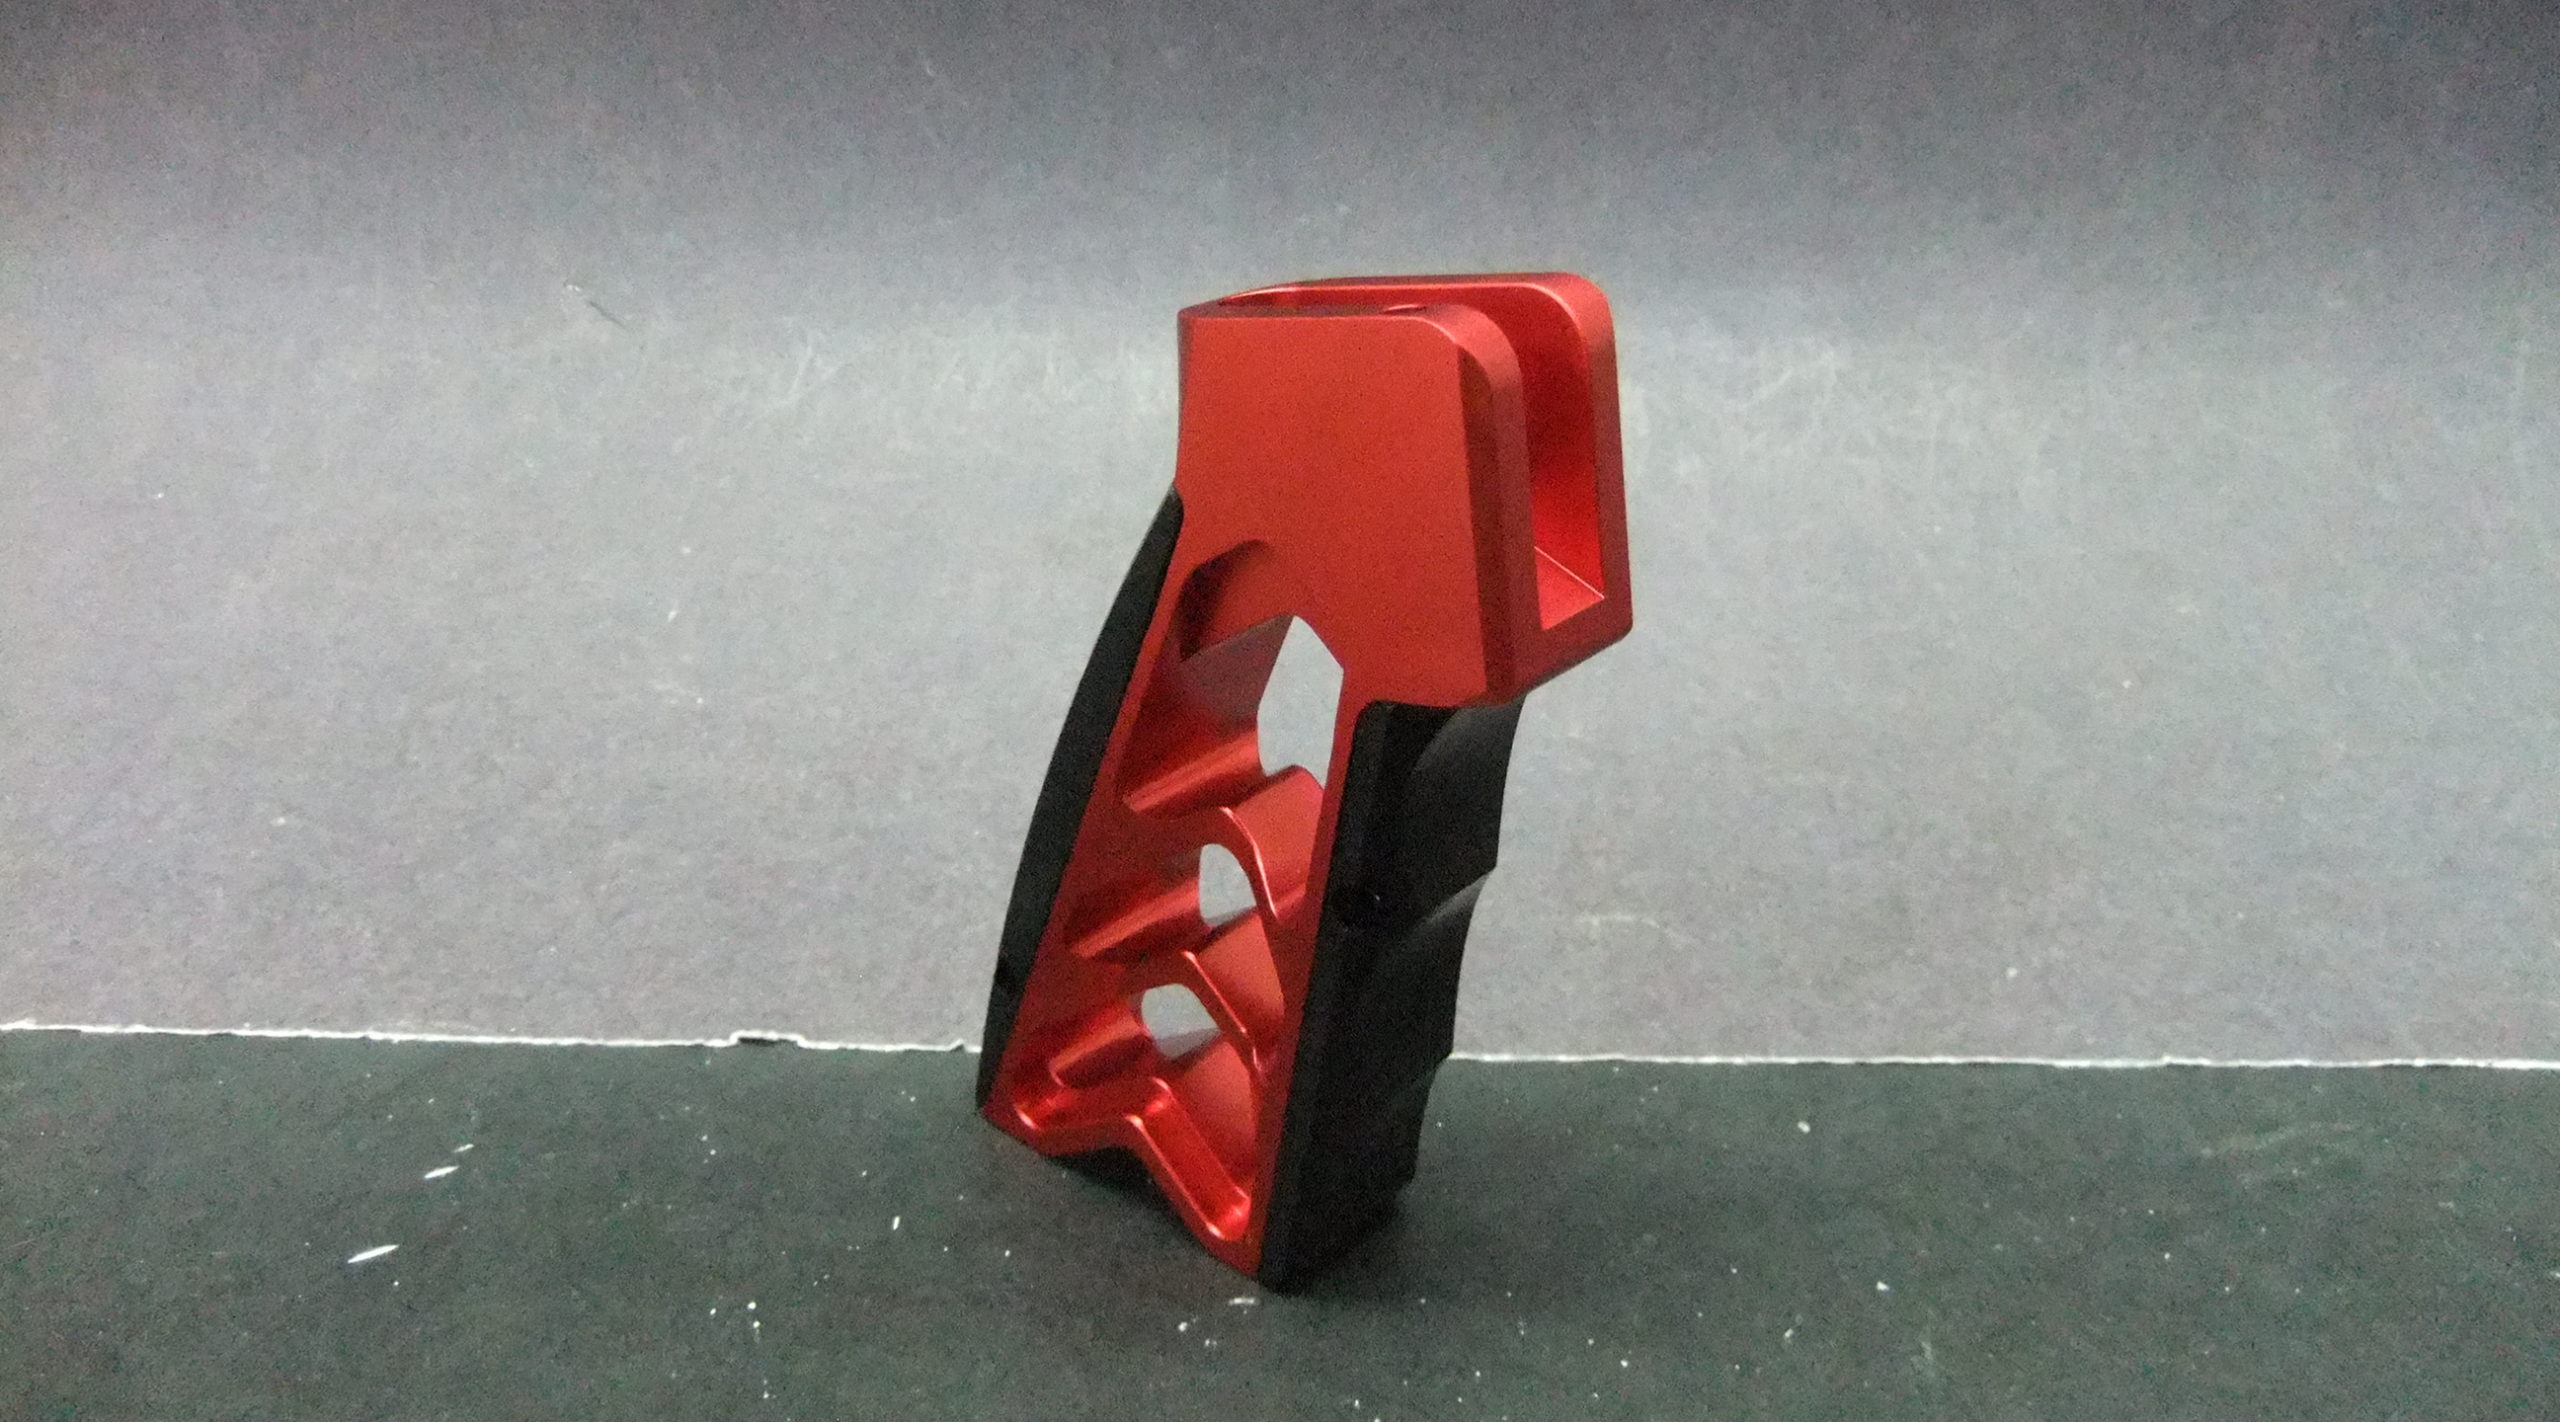 Aluminum Skeletonized Minimal Minimalist CNC Pistol Grip .223 5.56 .308 7.62